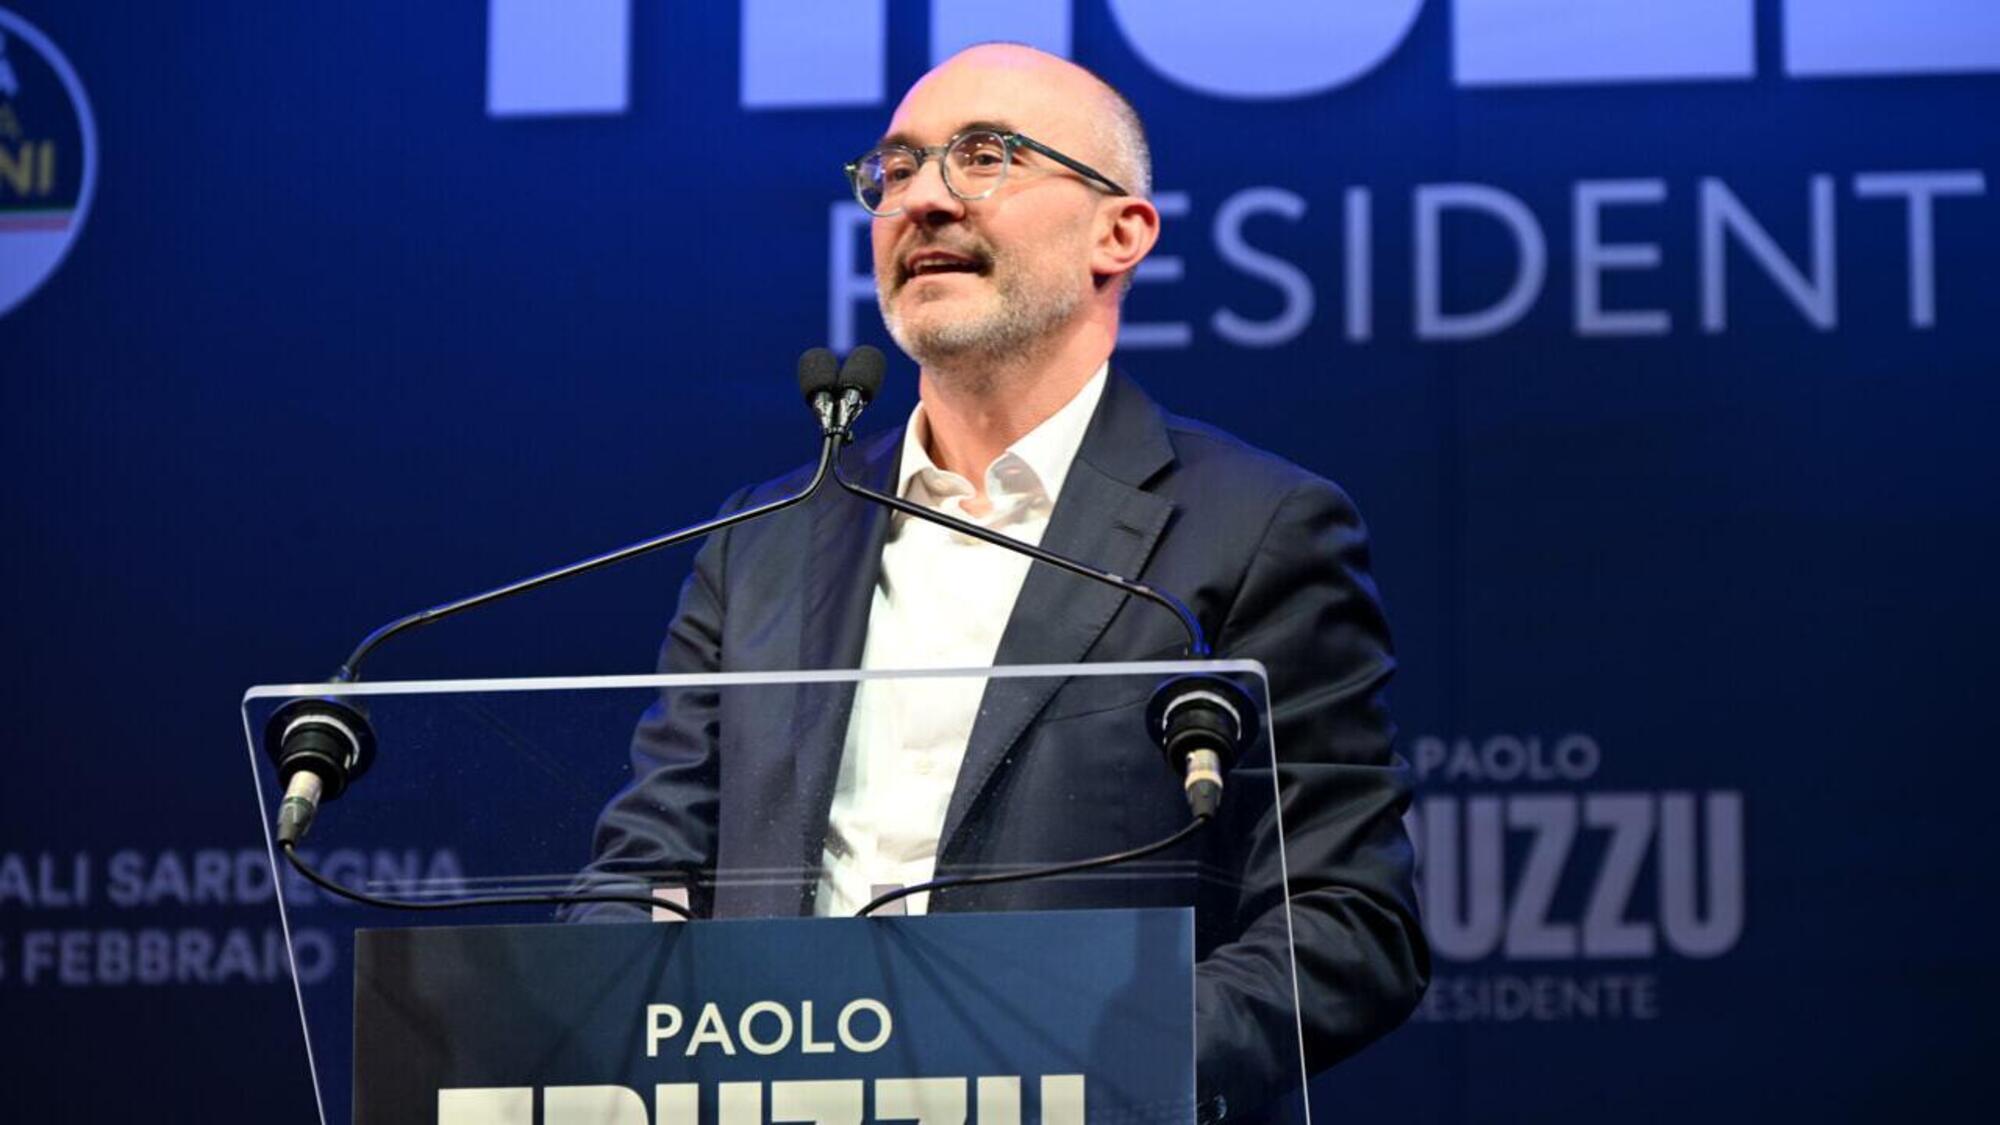 Paolo Truzzu, il candidato di centrodestra alle regionali in Sardegna